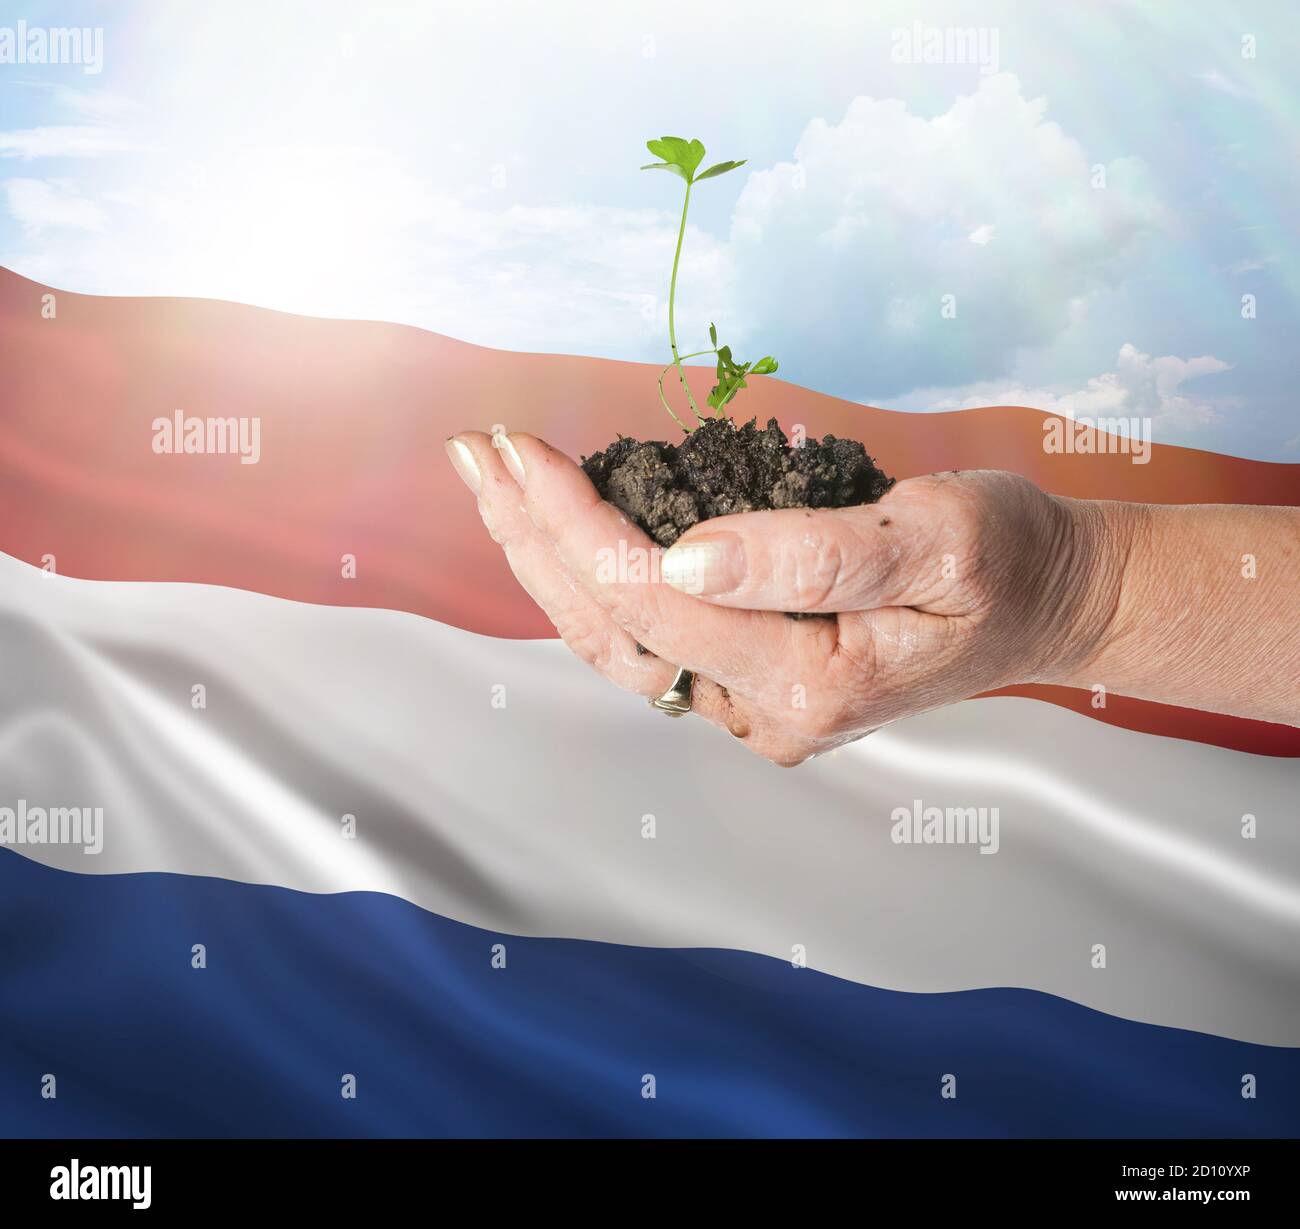 Países Bajos crecimiento y nuevo comienzo. Concepto de energía renovable verde y ecología. Mano sosteniendo planta joven. Foto de stock